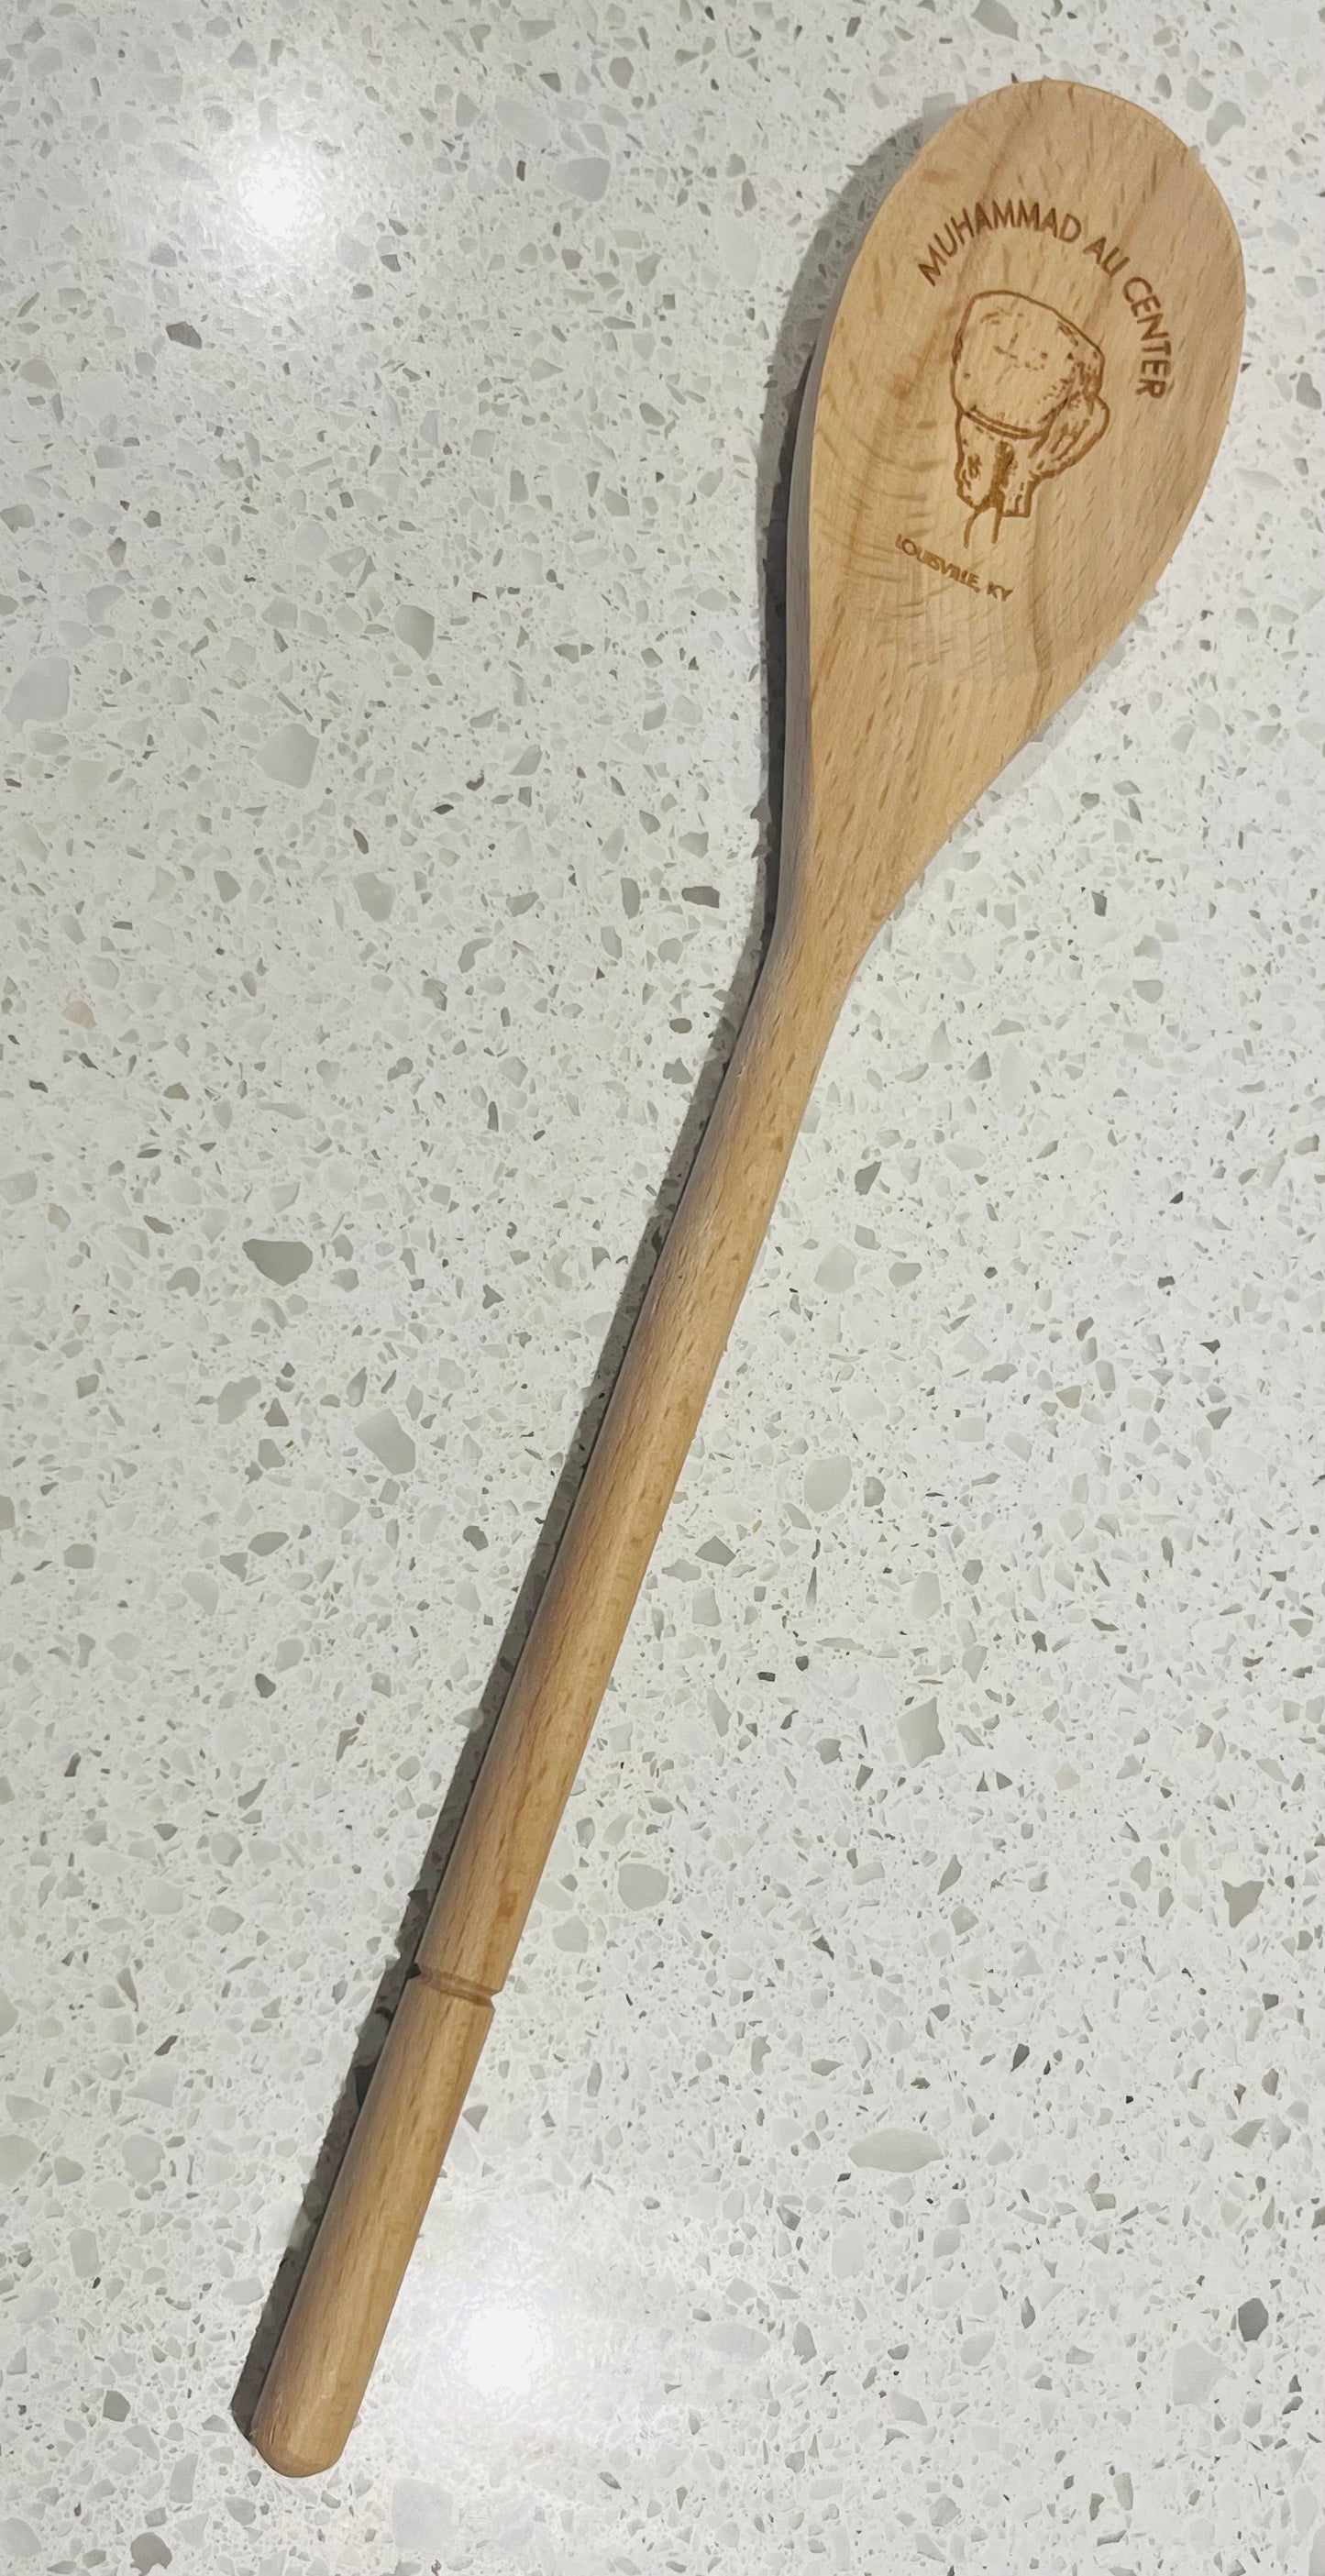 Muhammad Ali Center Wooden Spoons